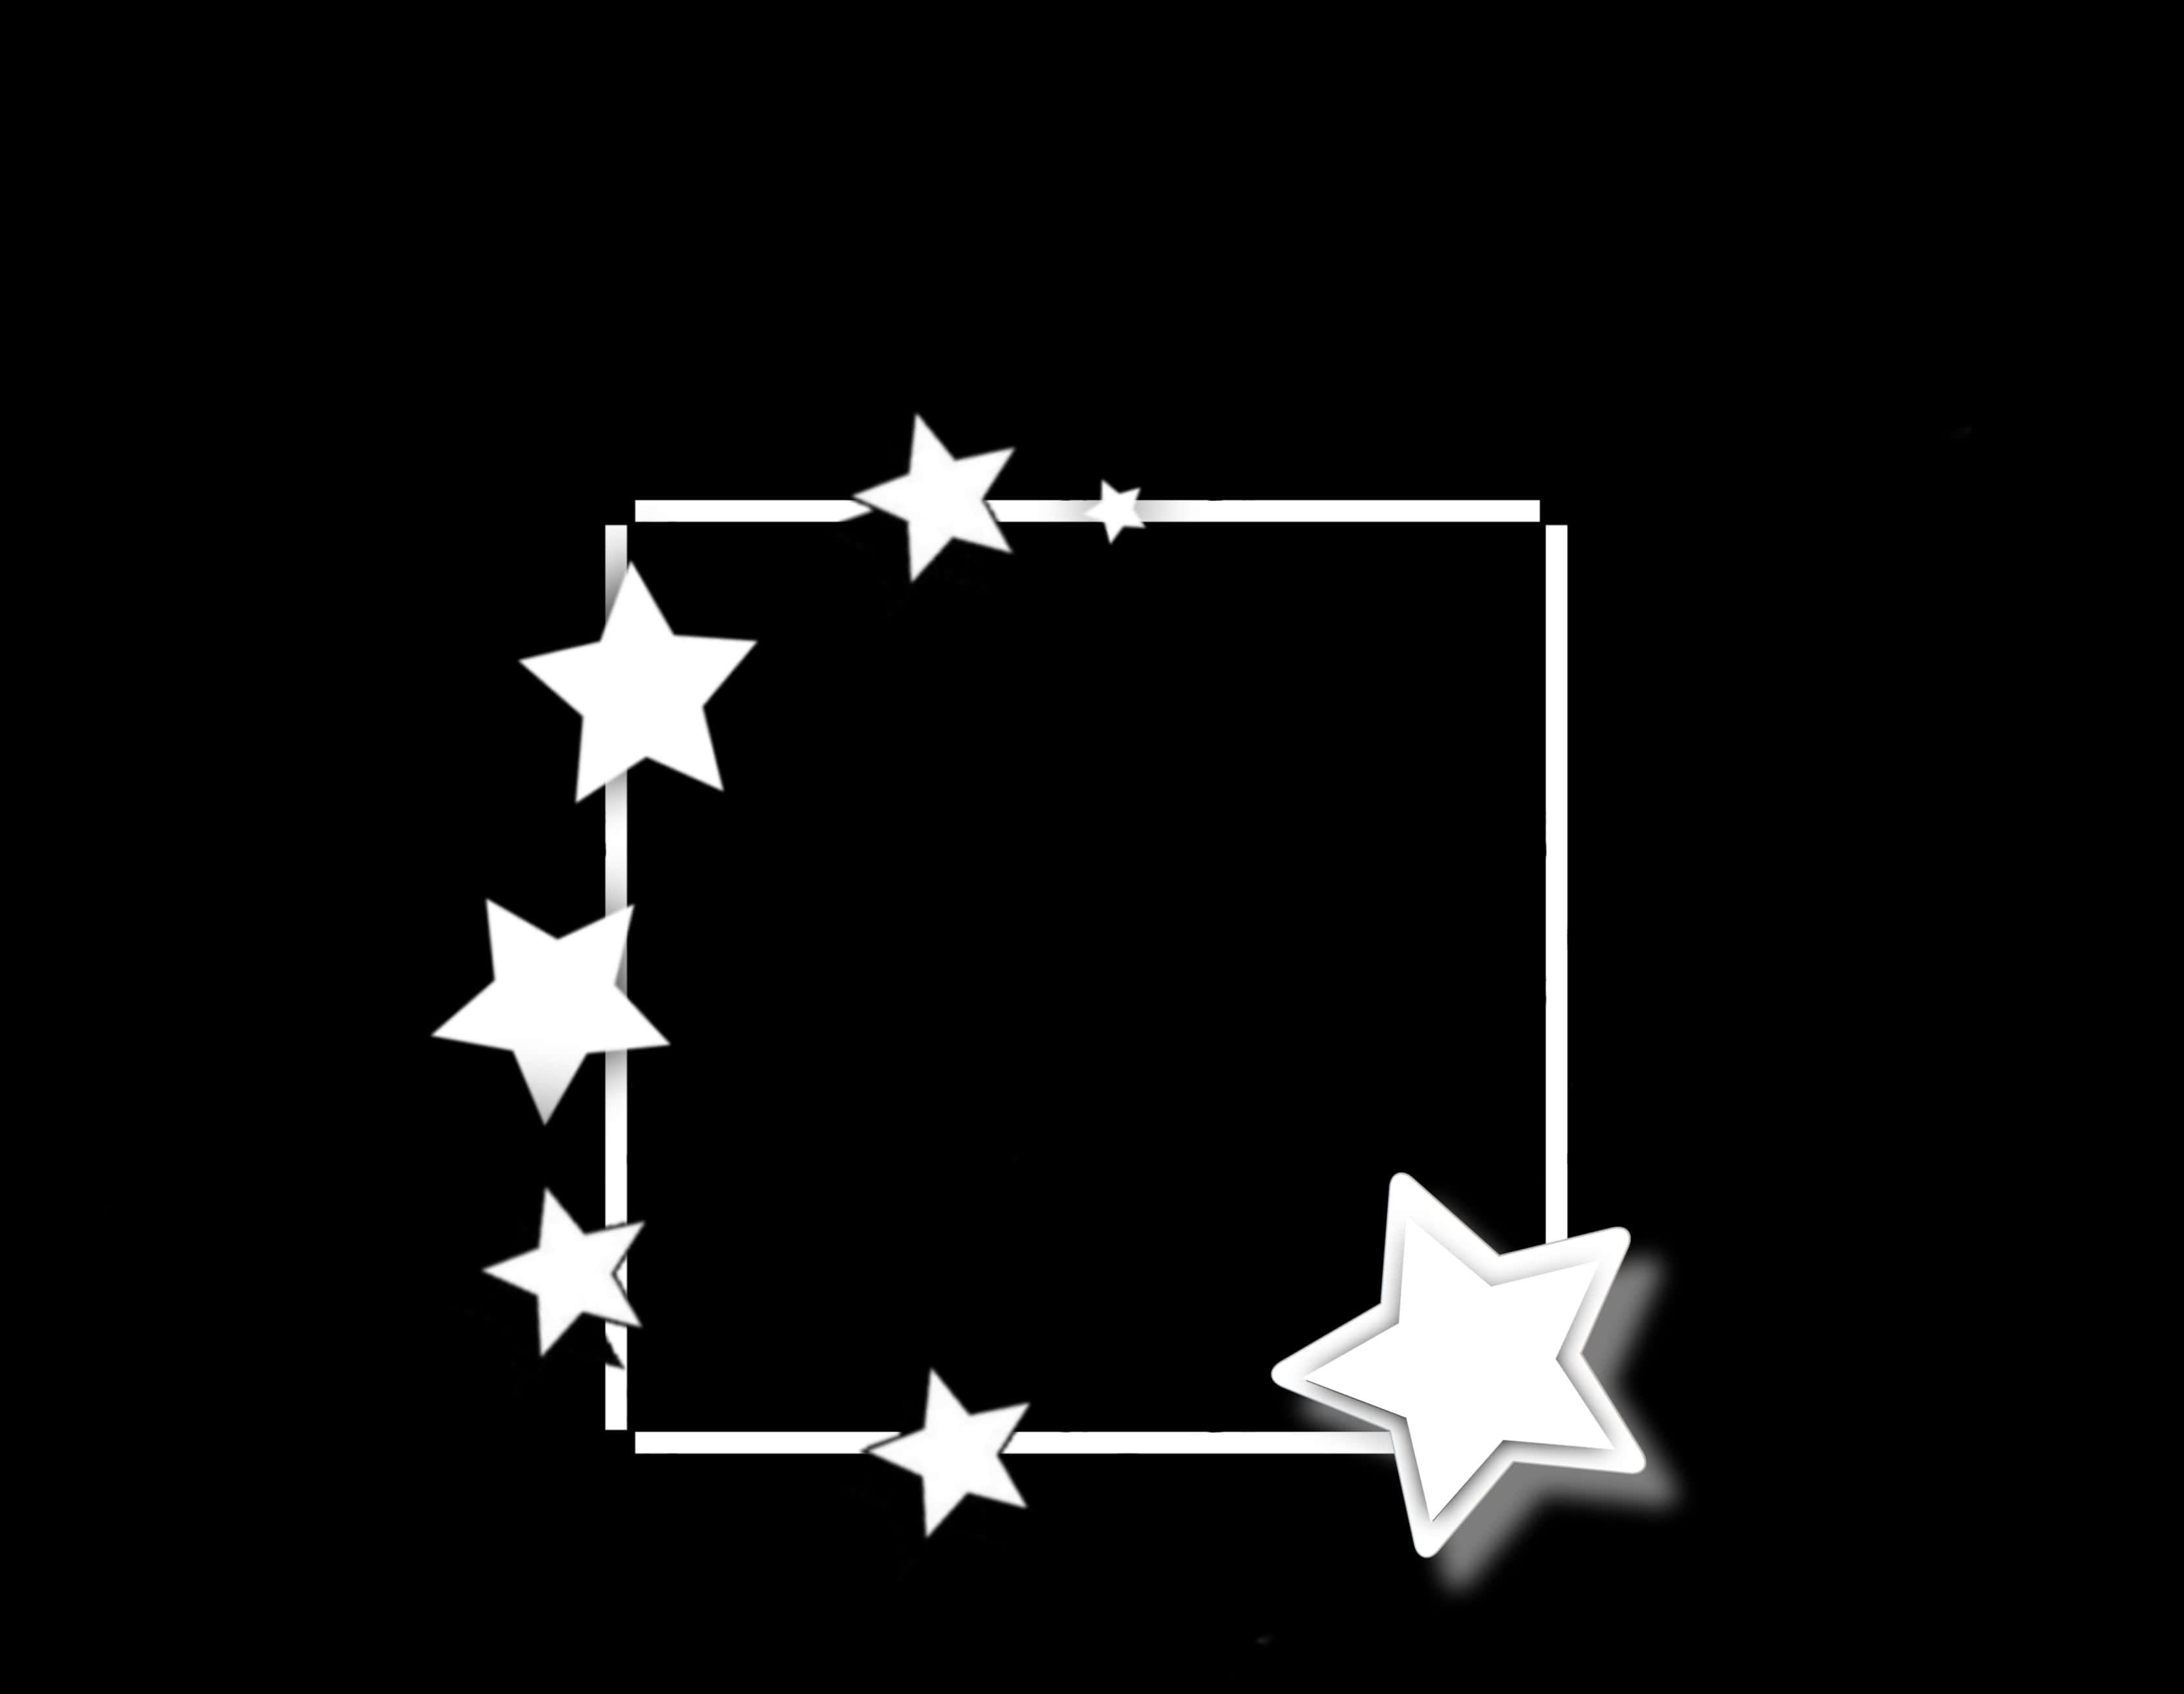 White Star Frameon Black Background